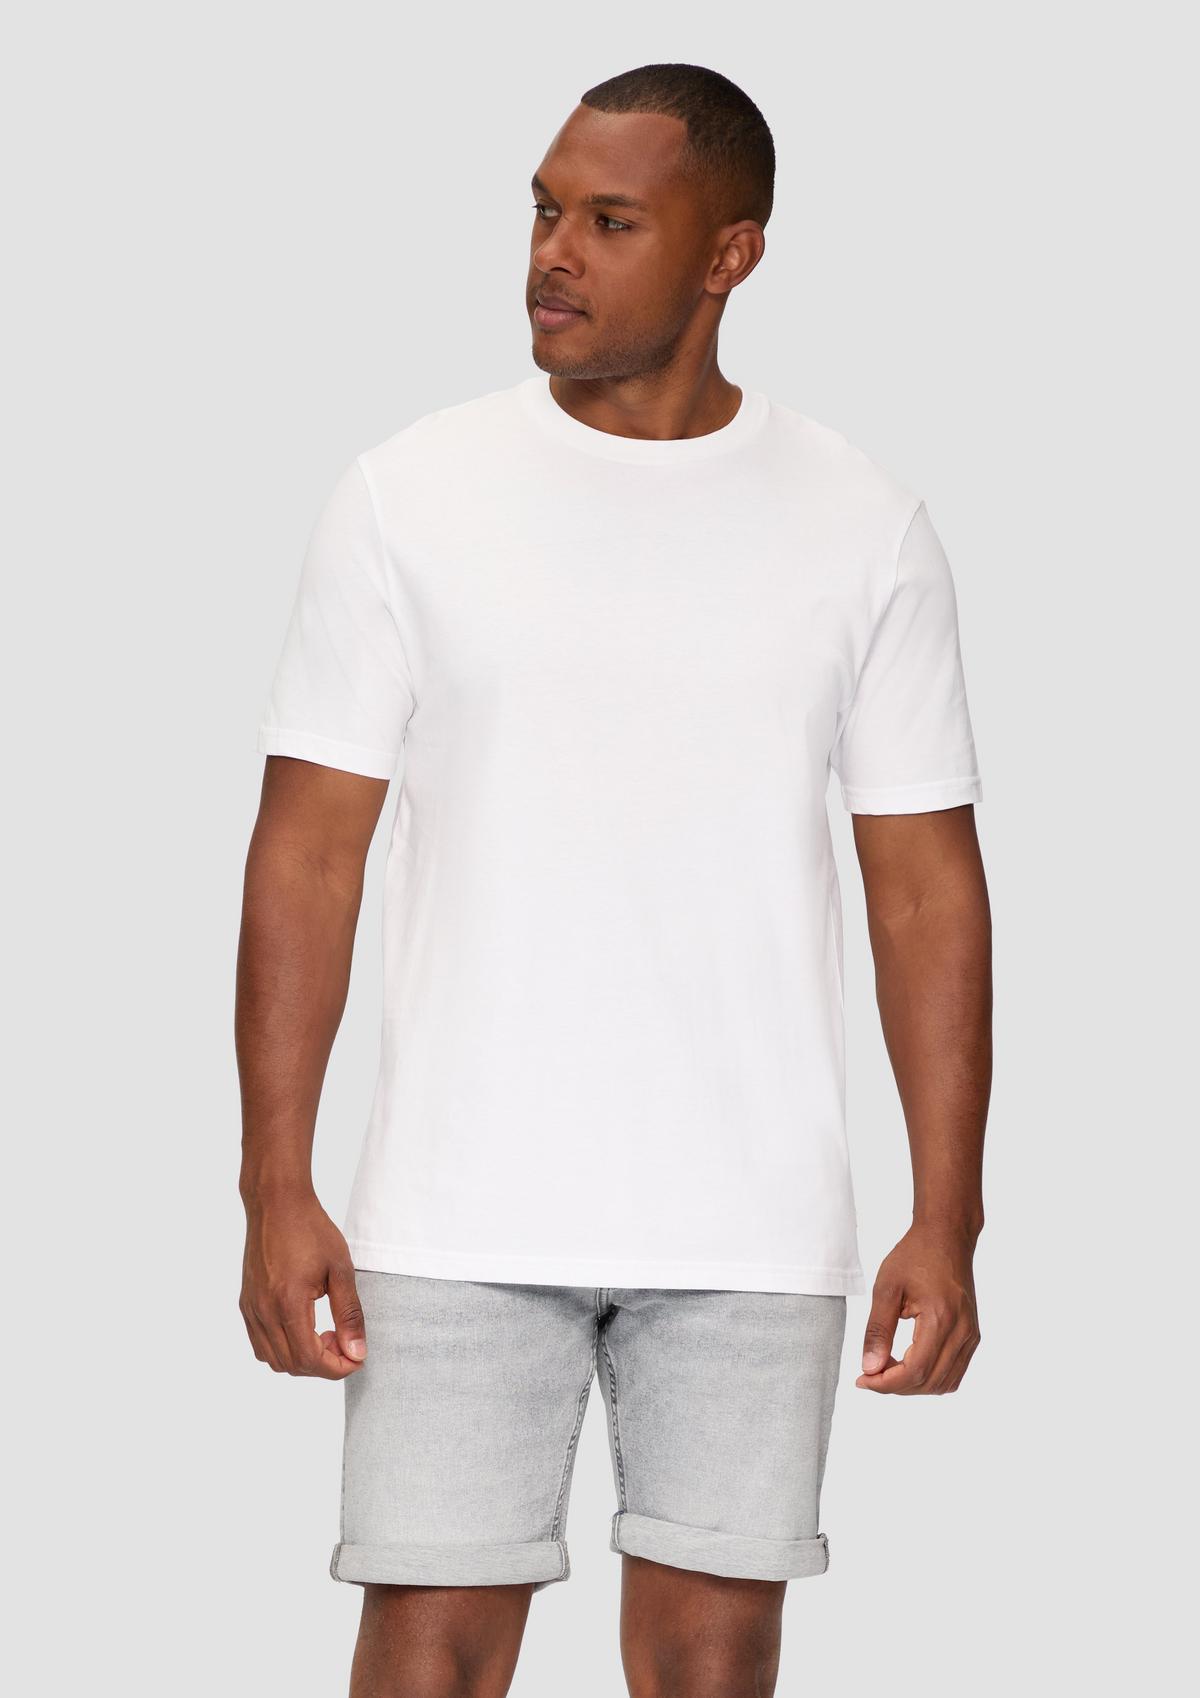 T-shirt with a round neckline